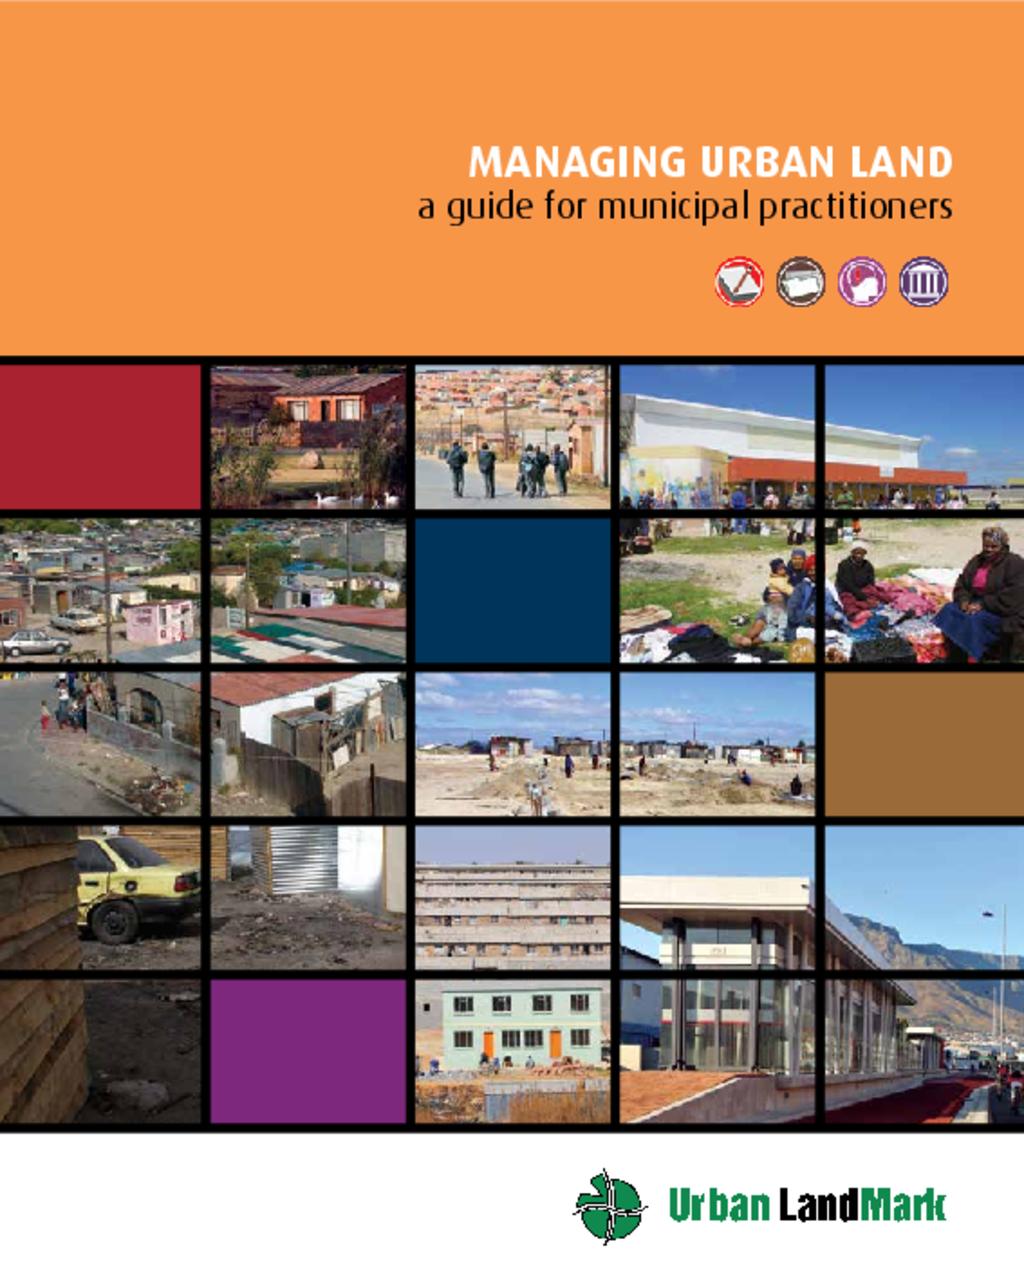 Managing urban land guide 